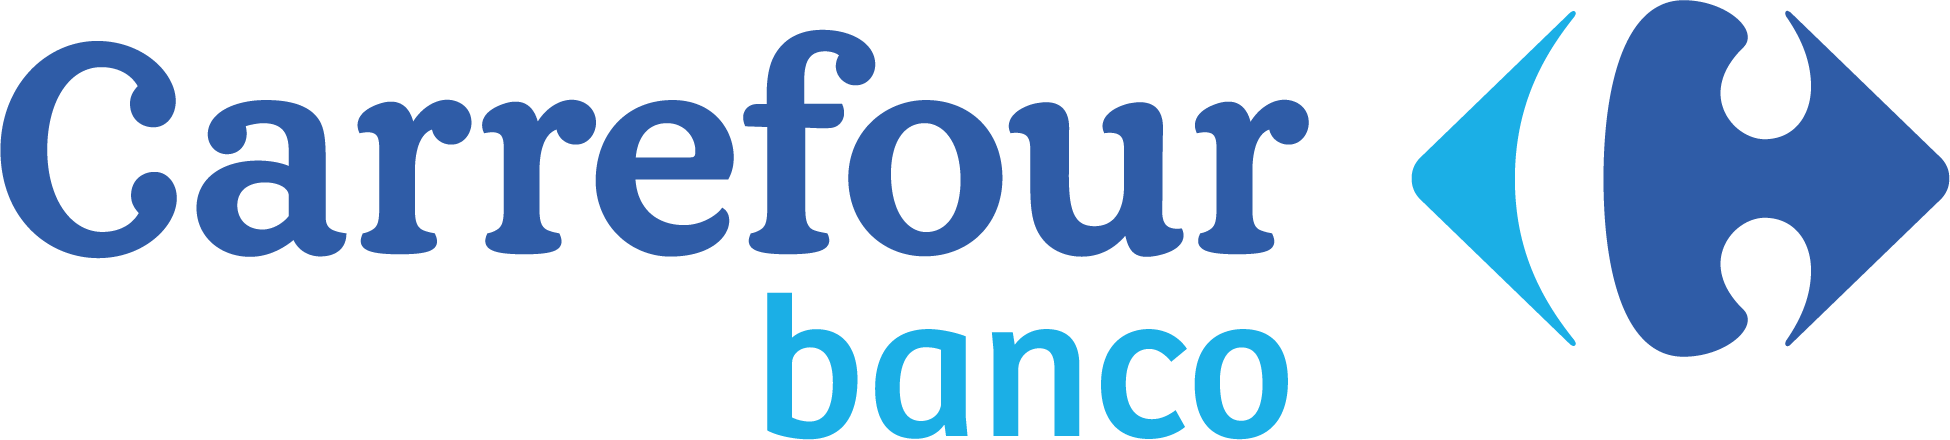 crf_banco_logo_horizOntal_colour_rgb.